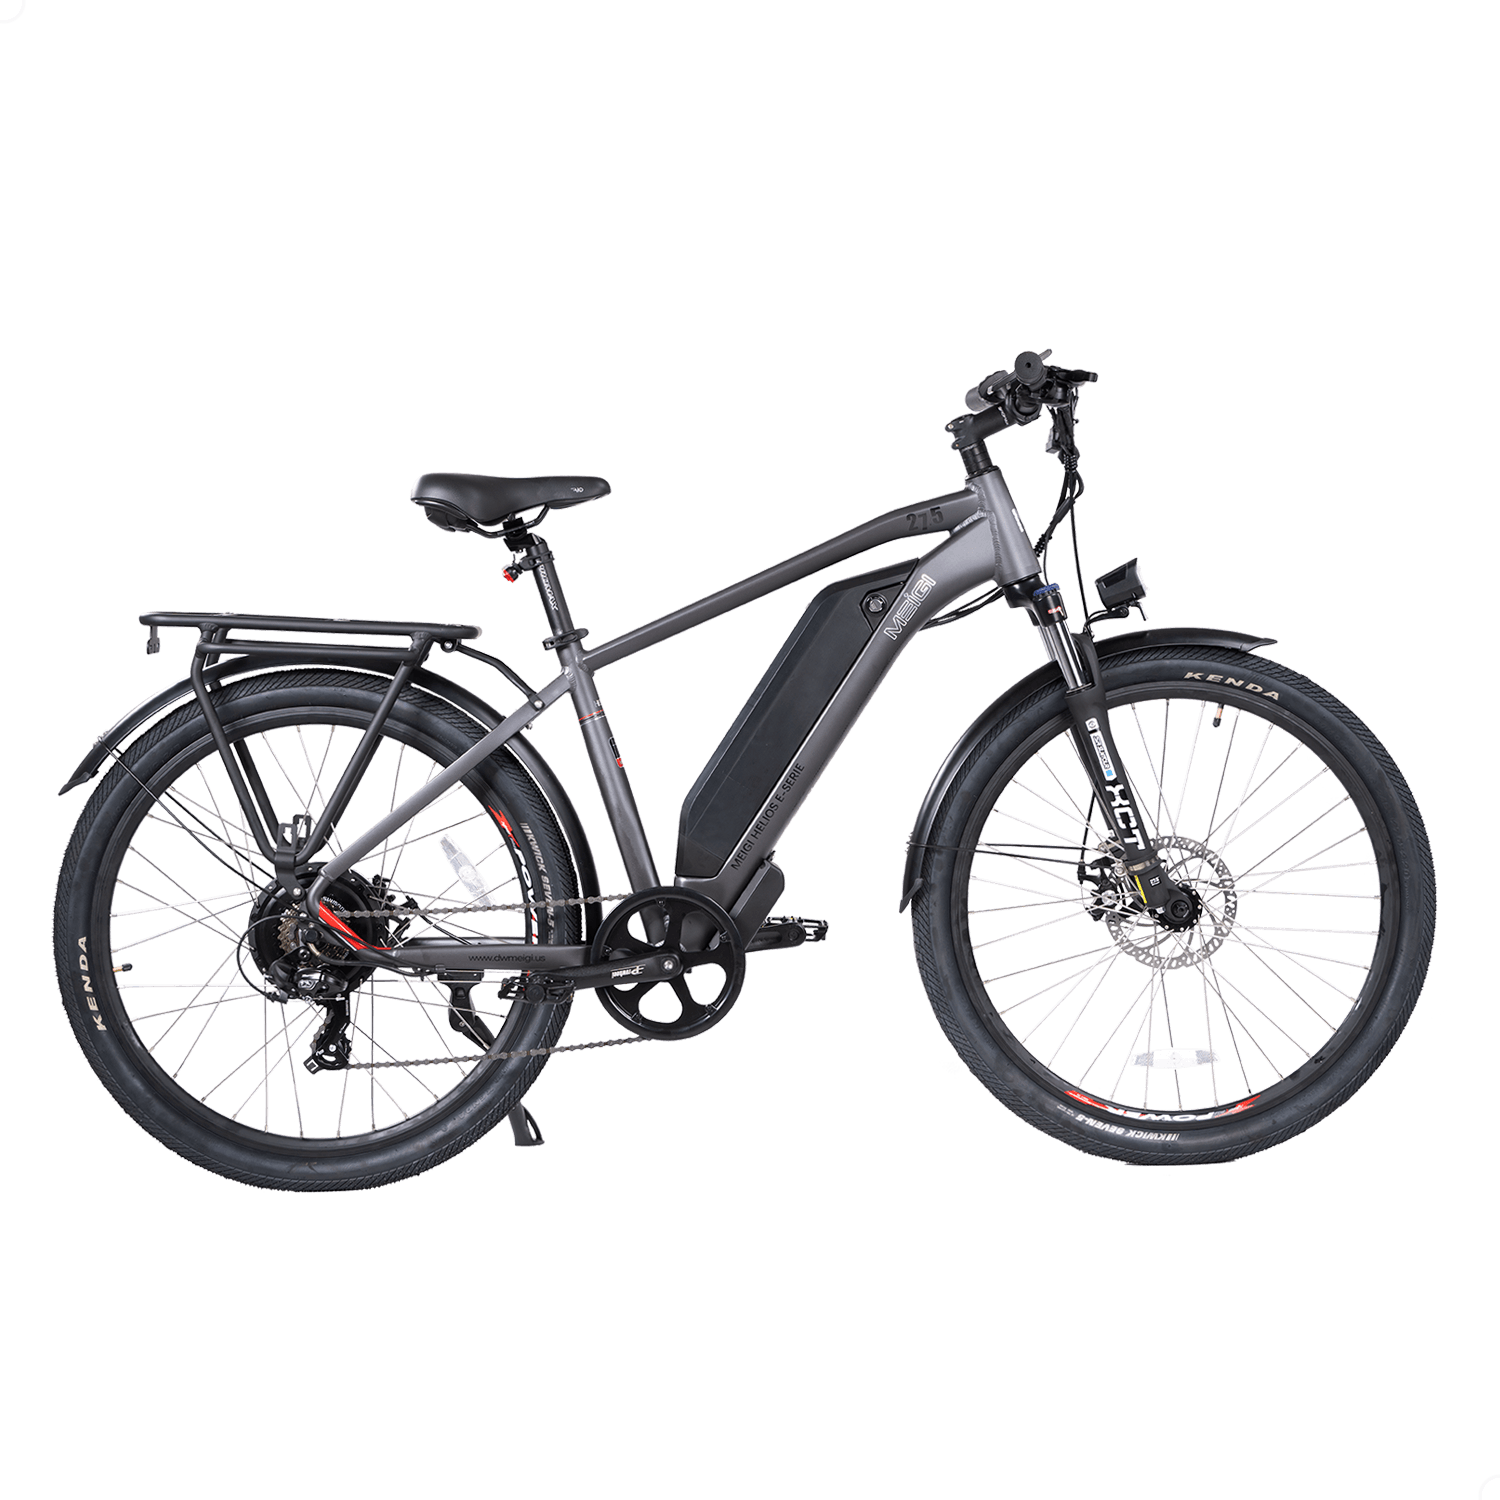 MG7612-HELIOS 750W Mountain Electric Bike - DWMEIGI